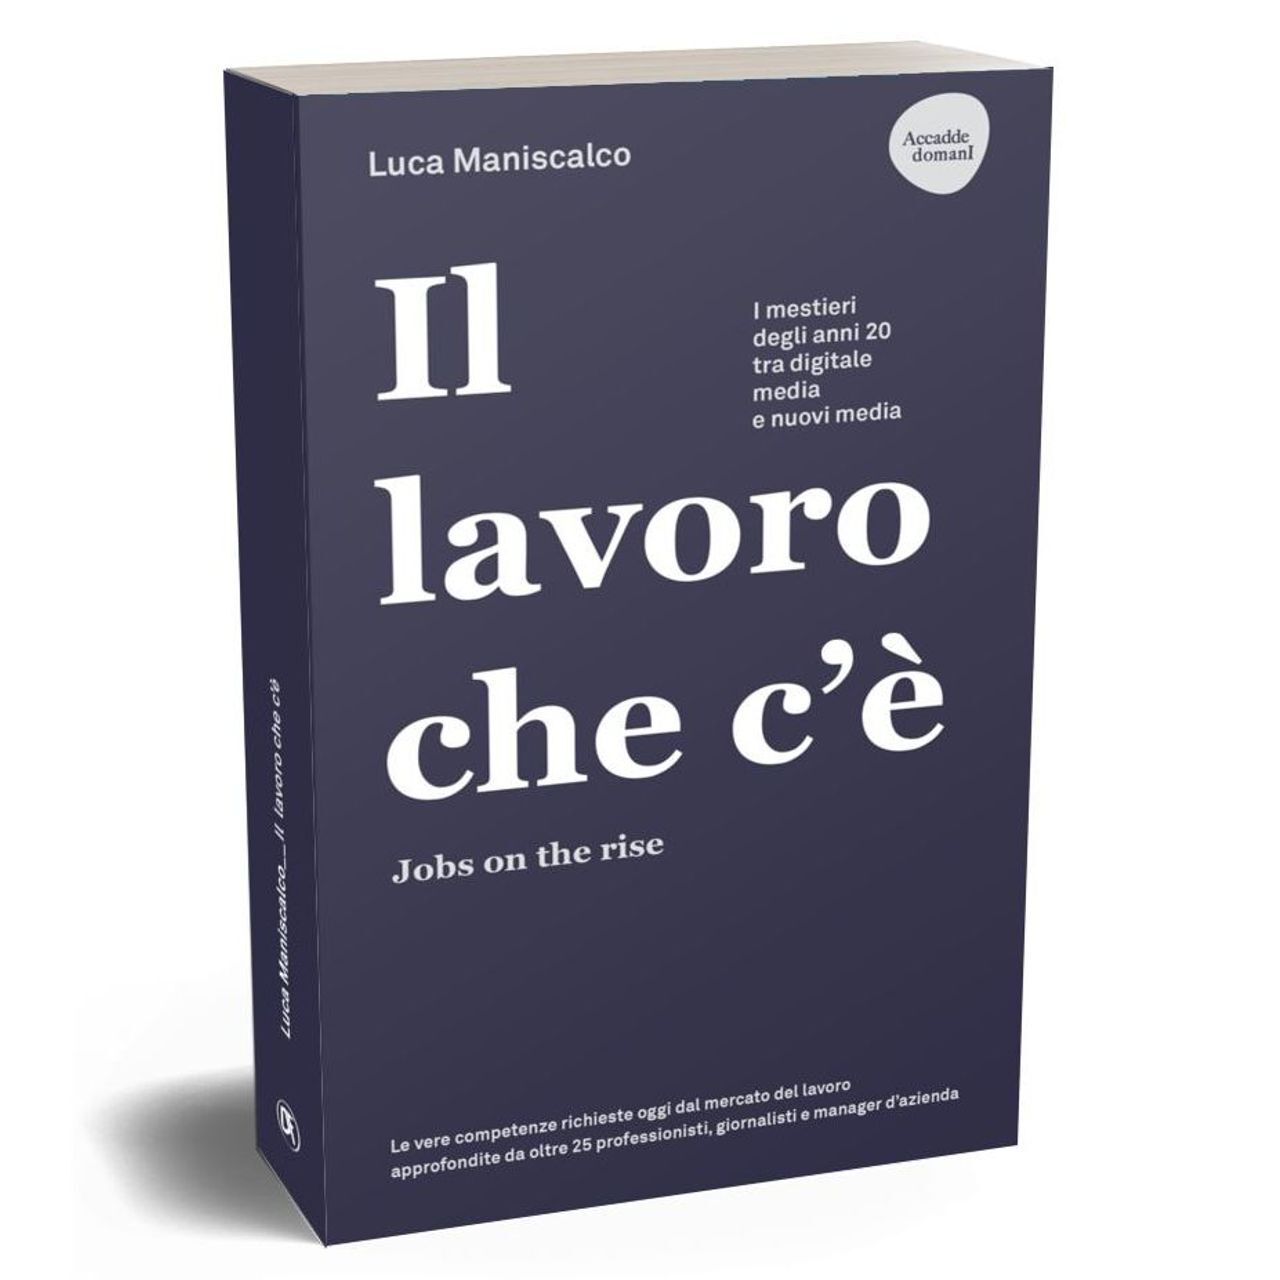 La copertina del libro “Il lavoro che c’è. Jobs on the rise” di Luca Maniscalco, edito dalla Dario Flaccovio Editore